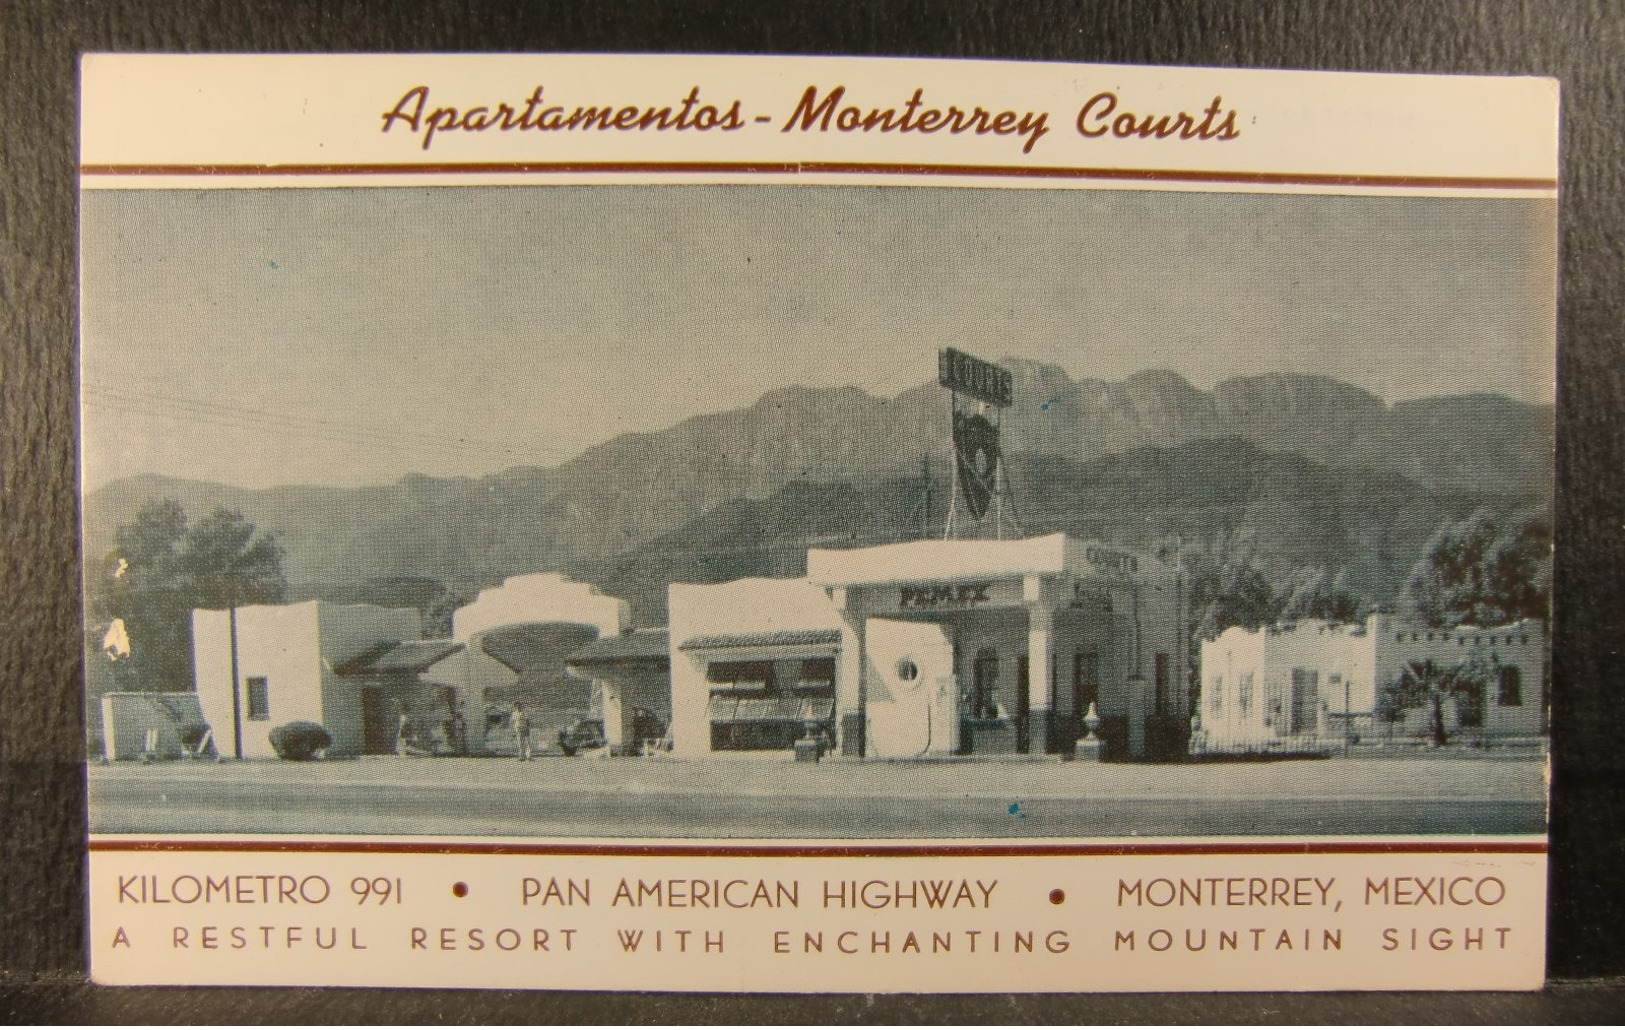 1940s MONTERREY NUEVO LEON MEXICO Resort View PC- Apartamentos Monterrey Courts & PEMEX Gasoline Station - Hotels & Restaurants